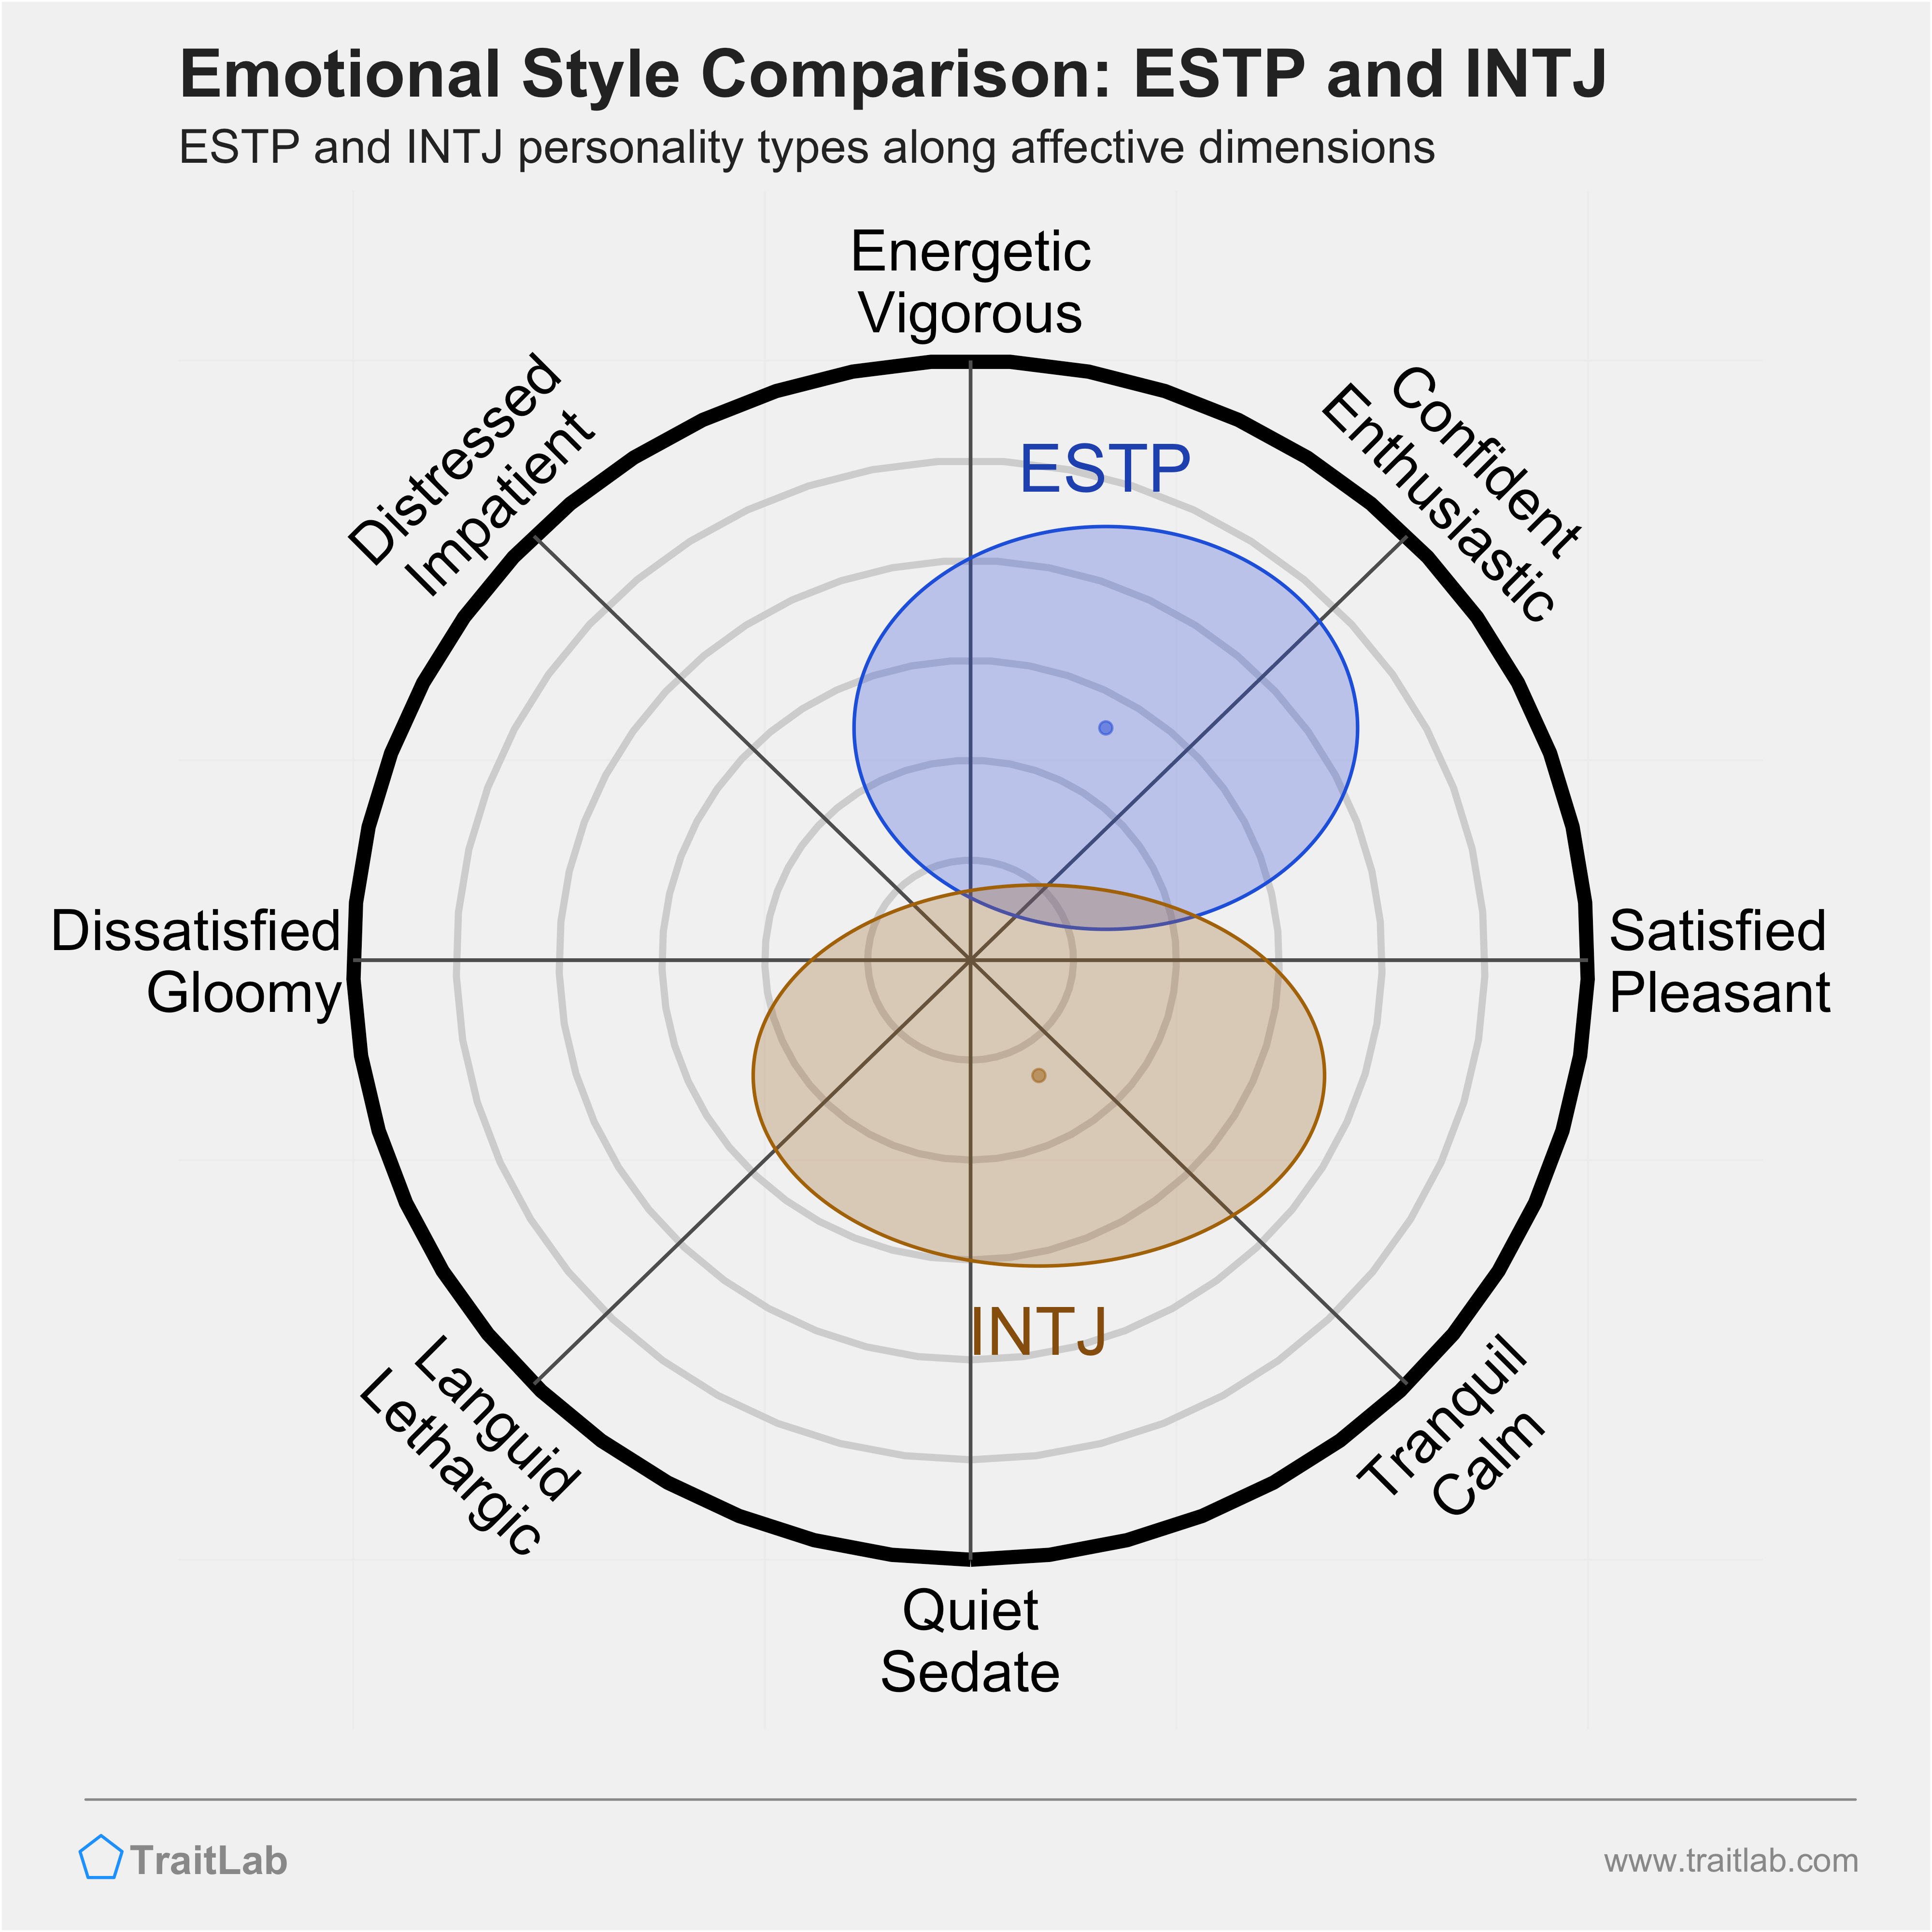 ESTP and INTJ comparison across emotional (affective) dimensions